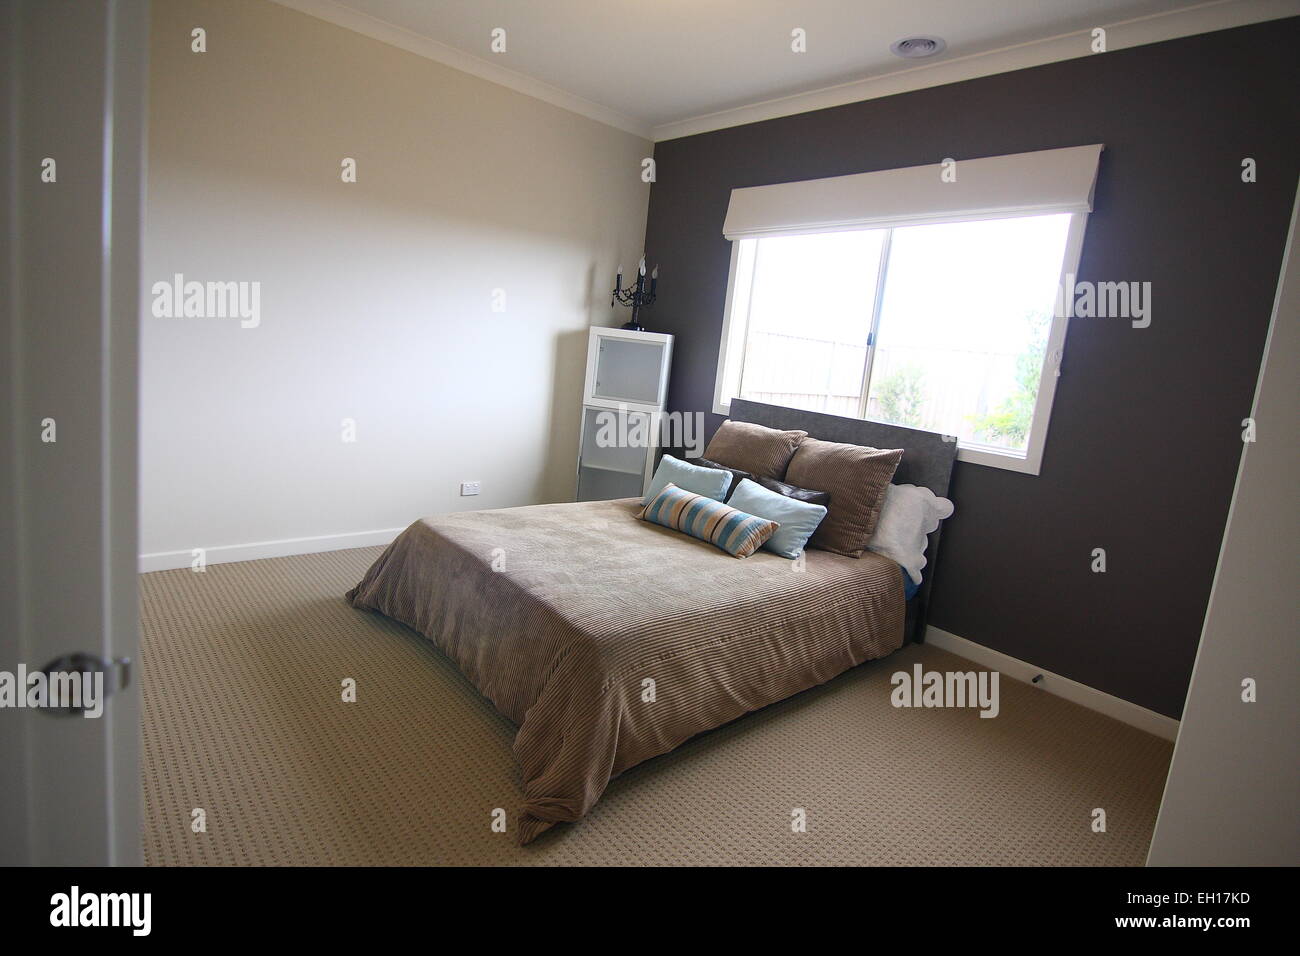 Chambre à coucher moderne avec lit double Banque D'Images